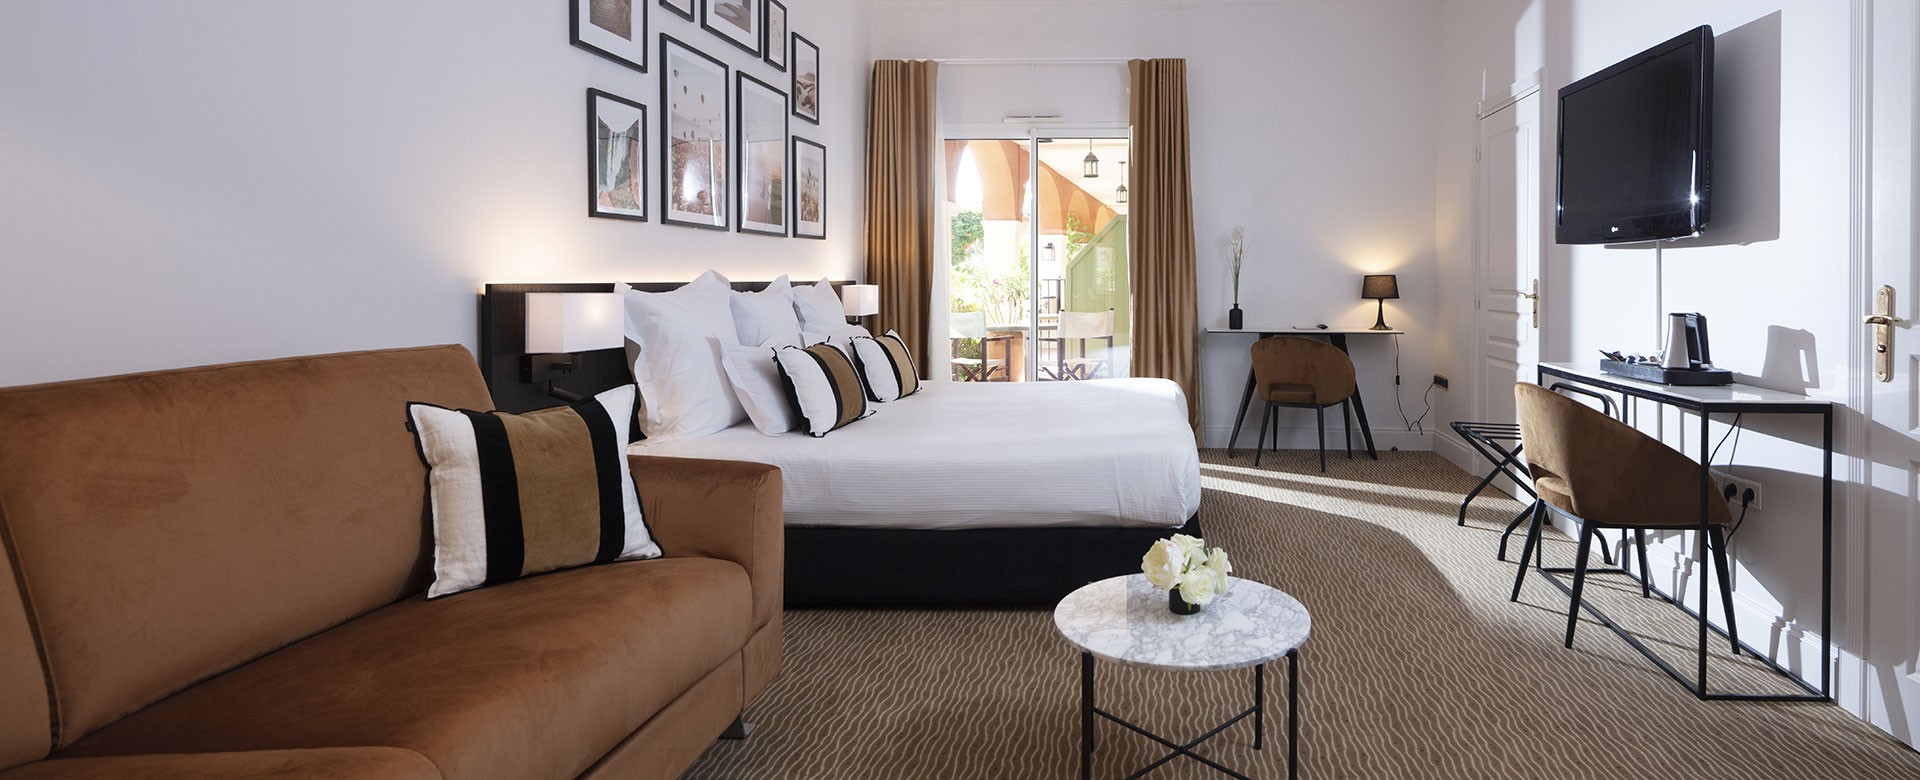 Habitación Junior Suite en Palmyra Golf, hotel de 4 estrellas en Cap d’Agde, con terraza privada